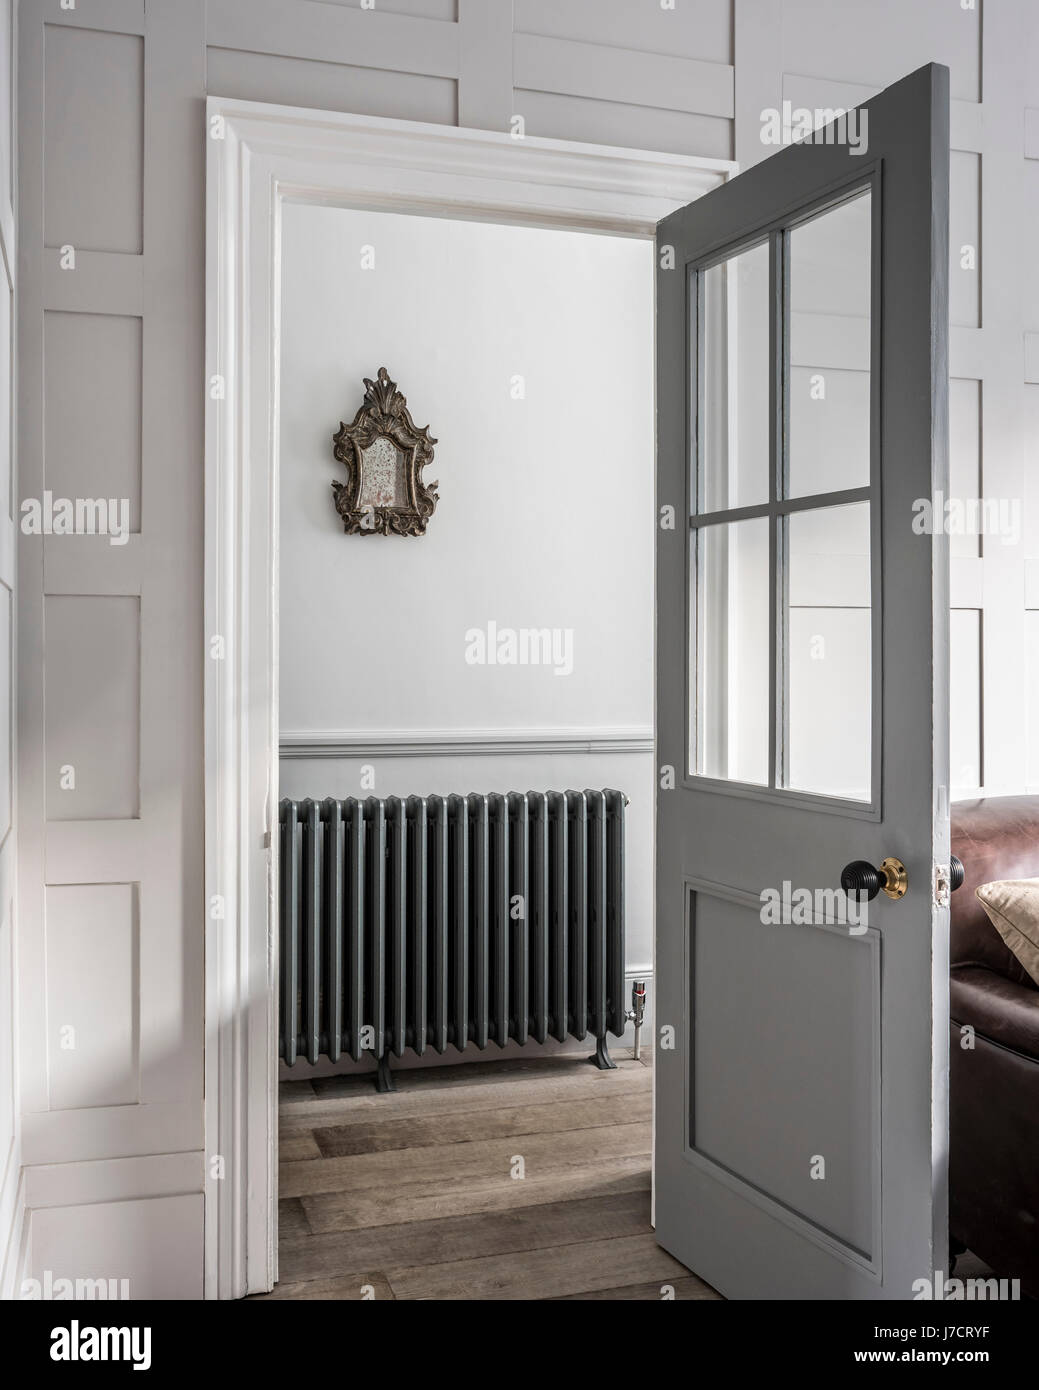 Voir par porte ouverte sur salle avec le modèle néo-classique de radiateur arroll. Un miroir doré années 1750 est suspendu au-dessus du radiateur. Banque D'Images